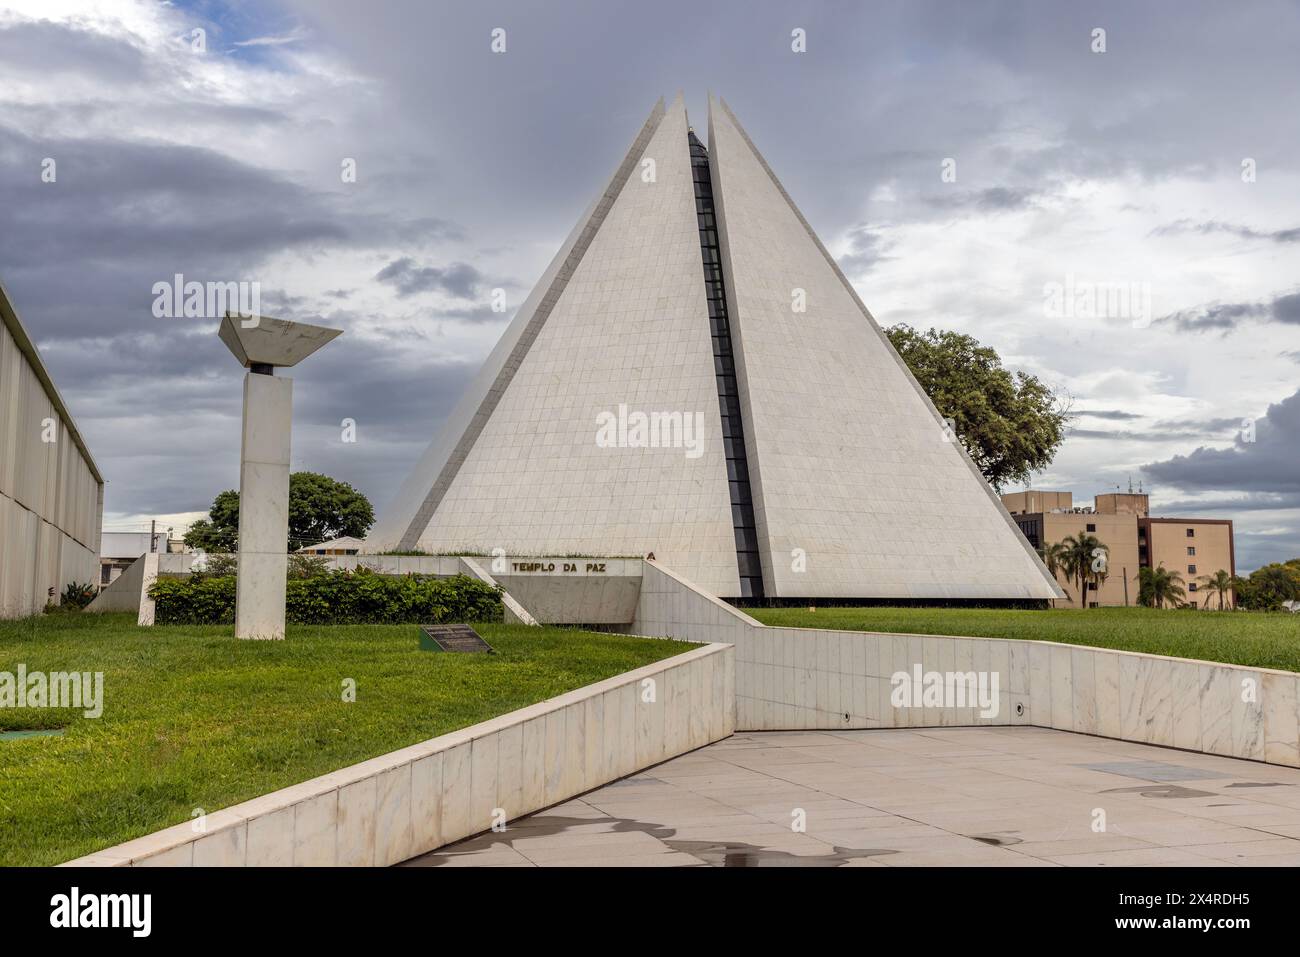 Tempio di buona volontà piramide a sette lati, Templo da Boa Vontade, Brasilia, Brasile Foto Stock